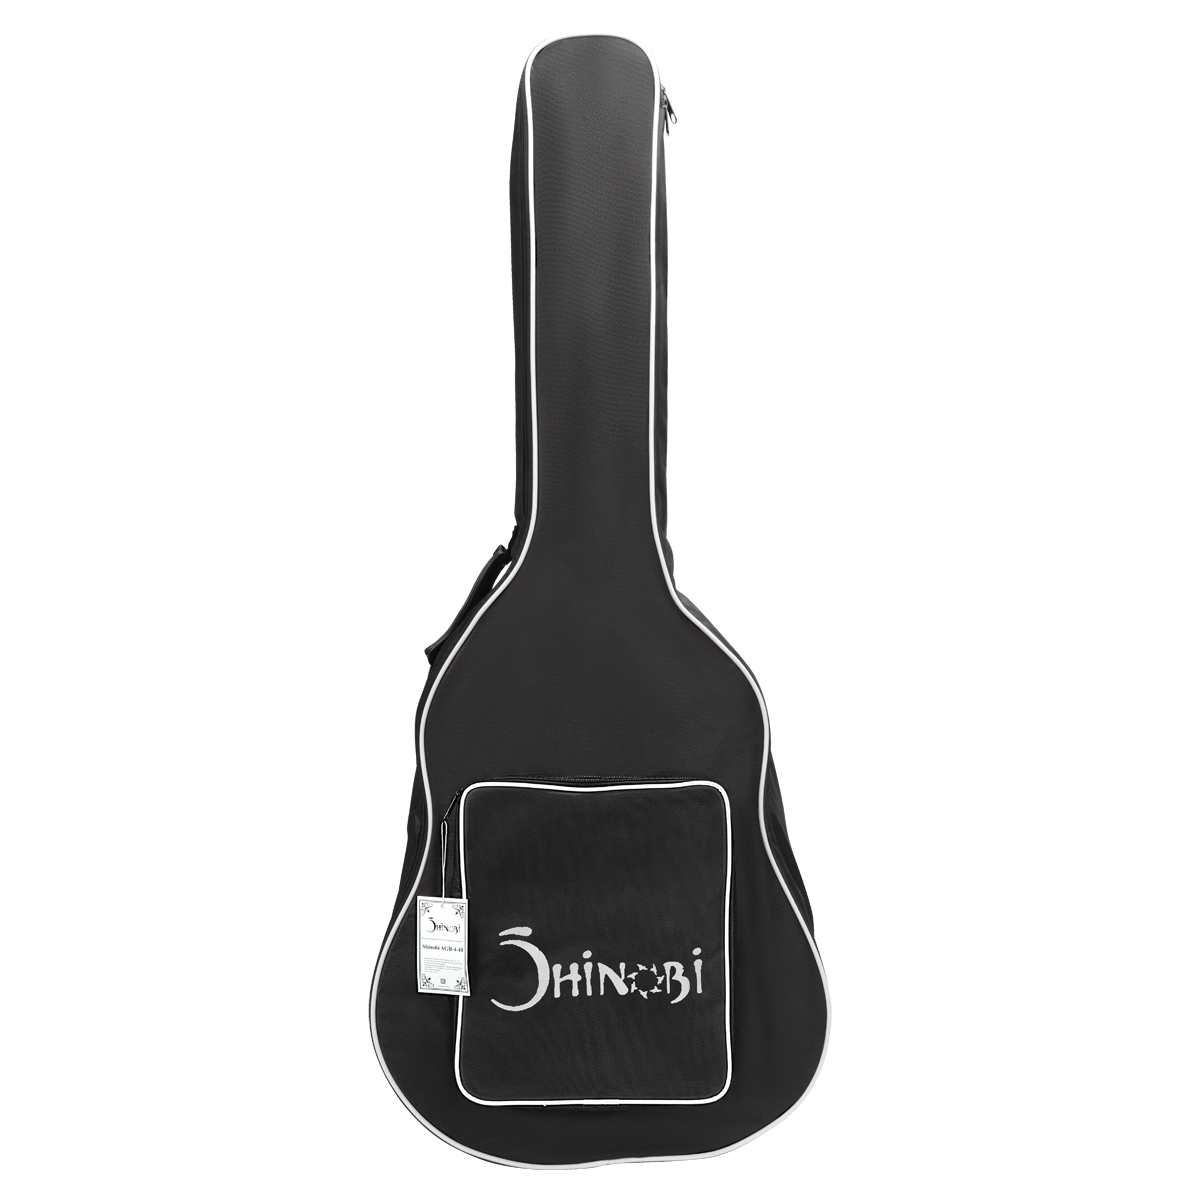 Shinobi AGB-4-41 Чехол для акустической гитары 41'' с утеплителем 5мм